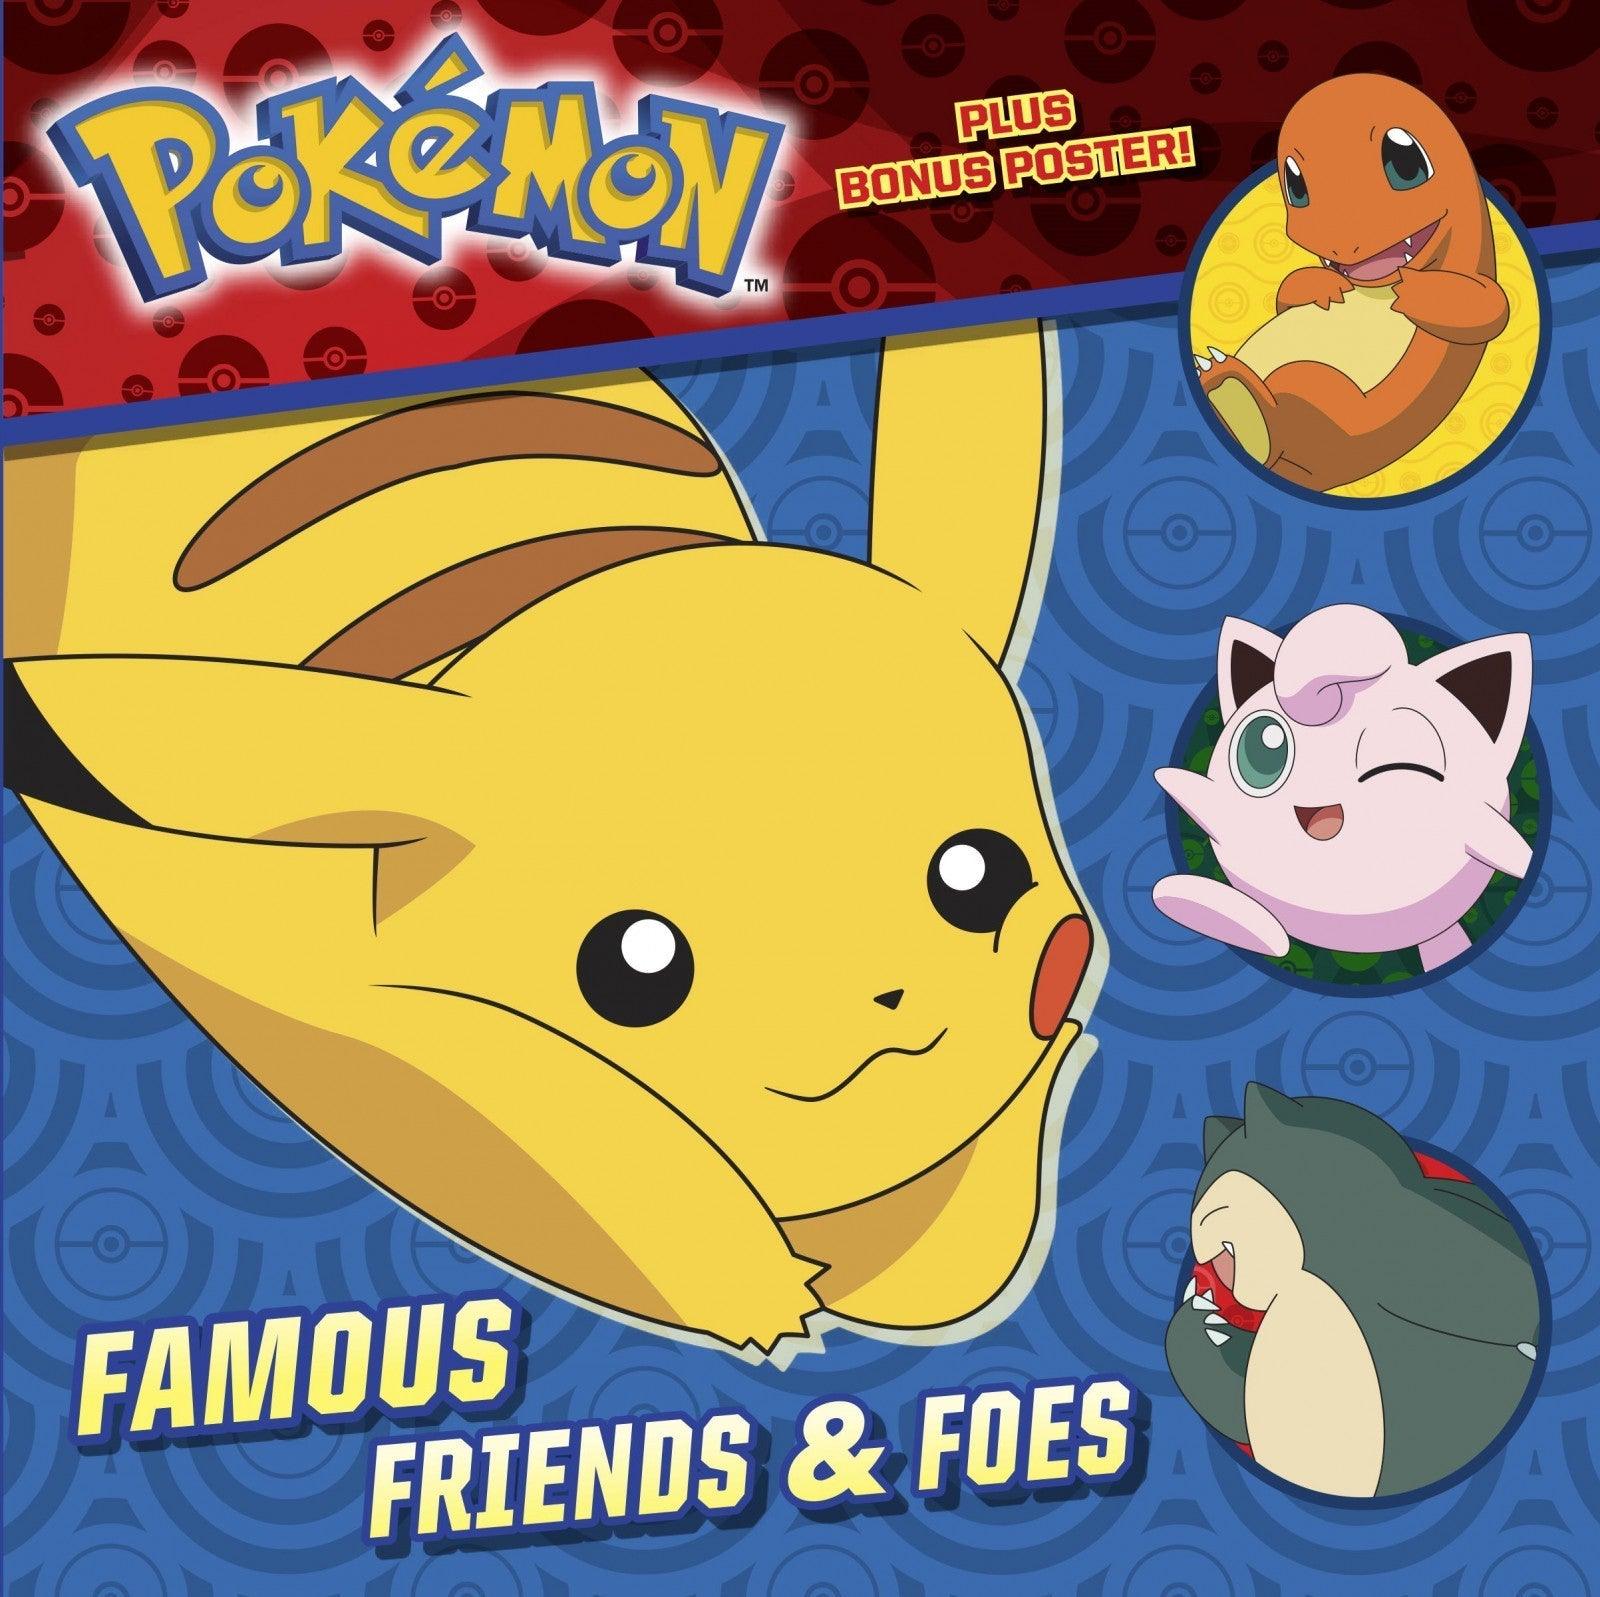 VR-92510 Pokemon Famous Friends & Foes - Penguin Random House - Titan Pop Culture